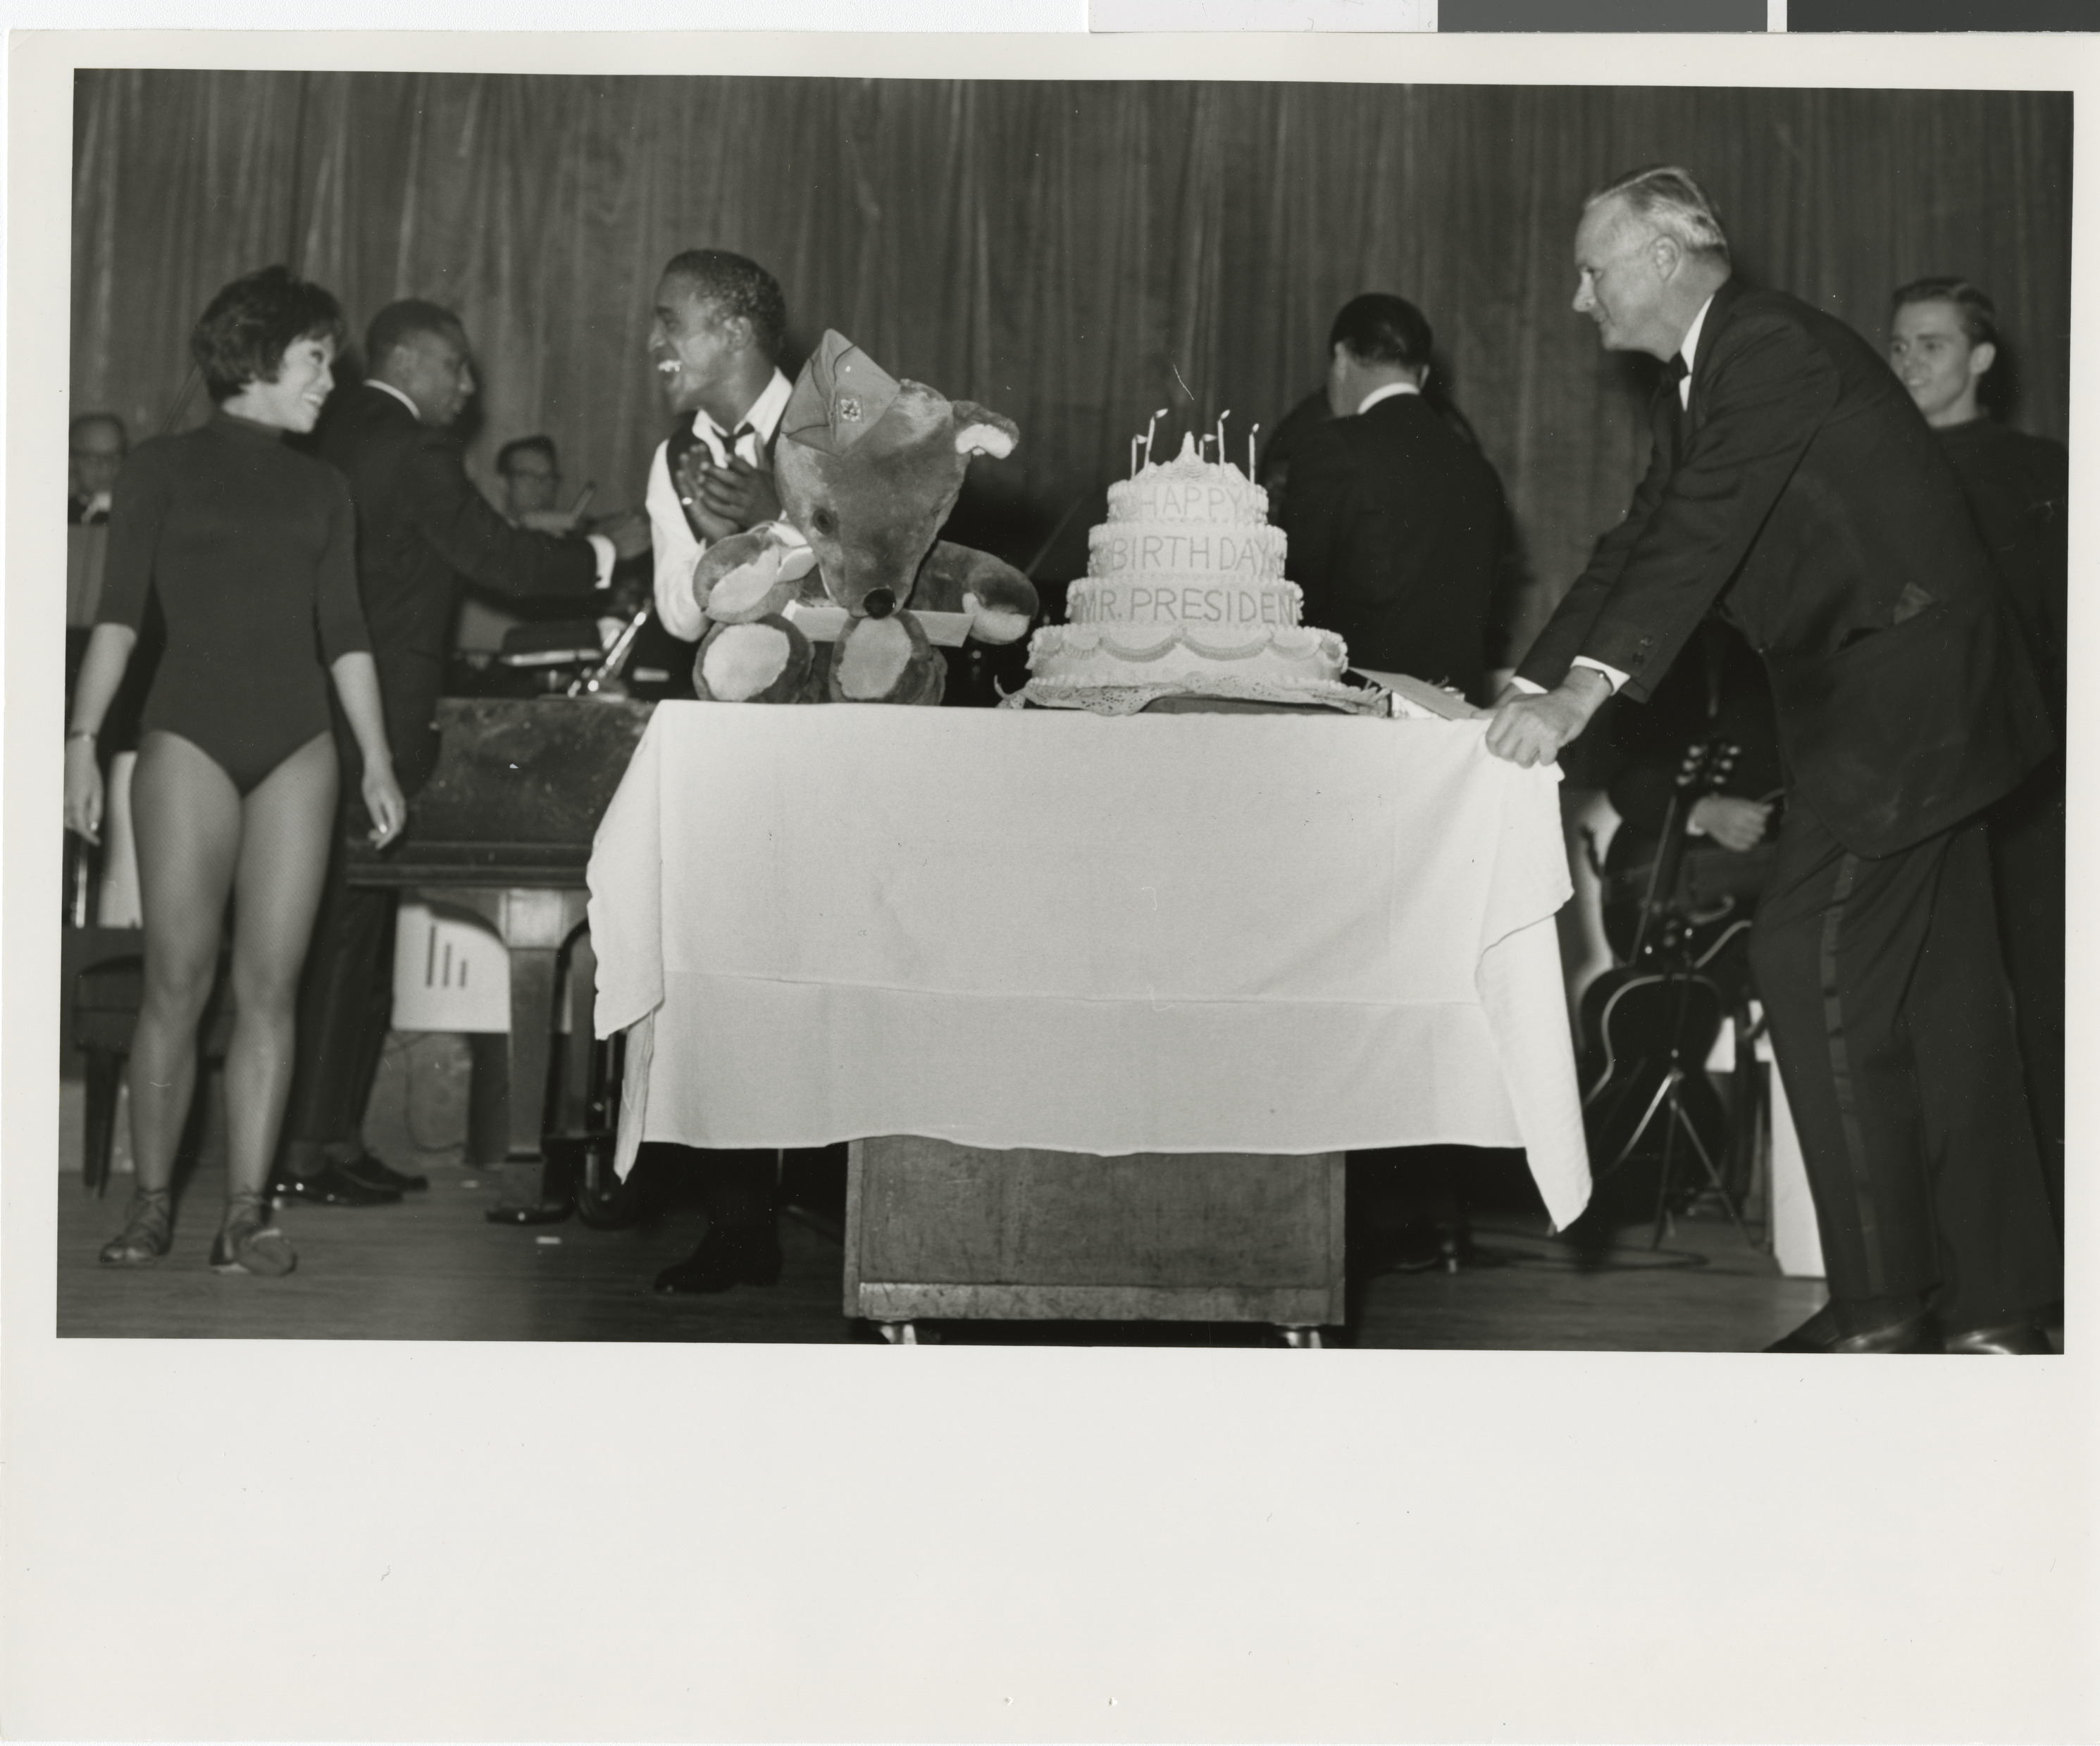 Davis and cake, Image 01